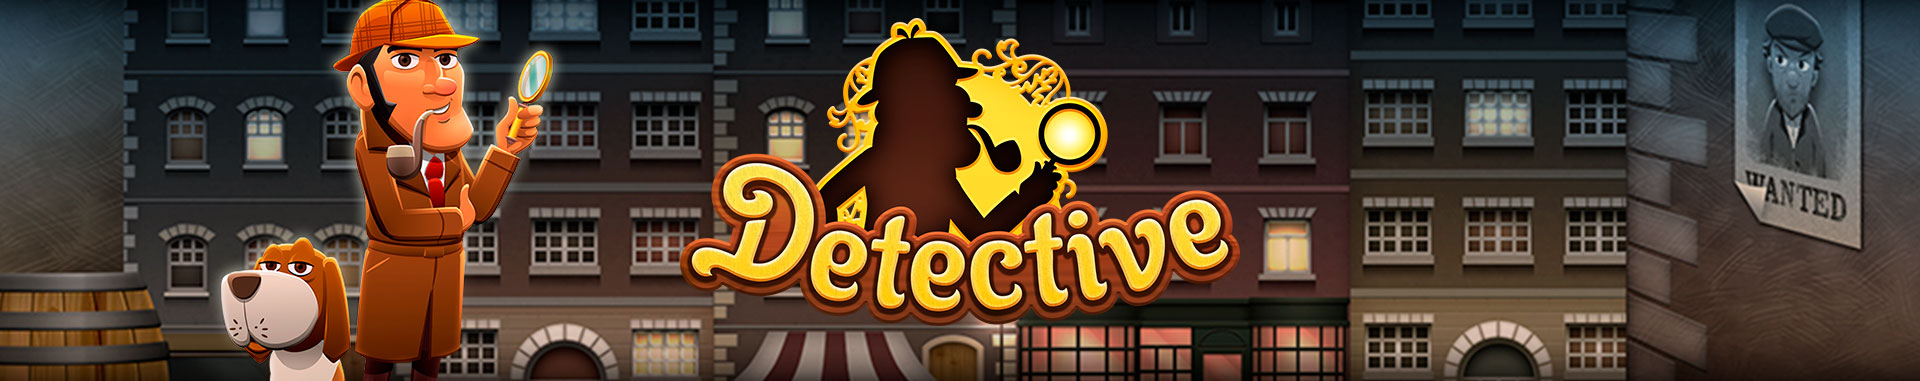 Video Bingo Online Detective